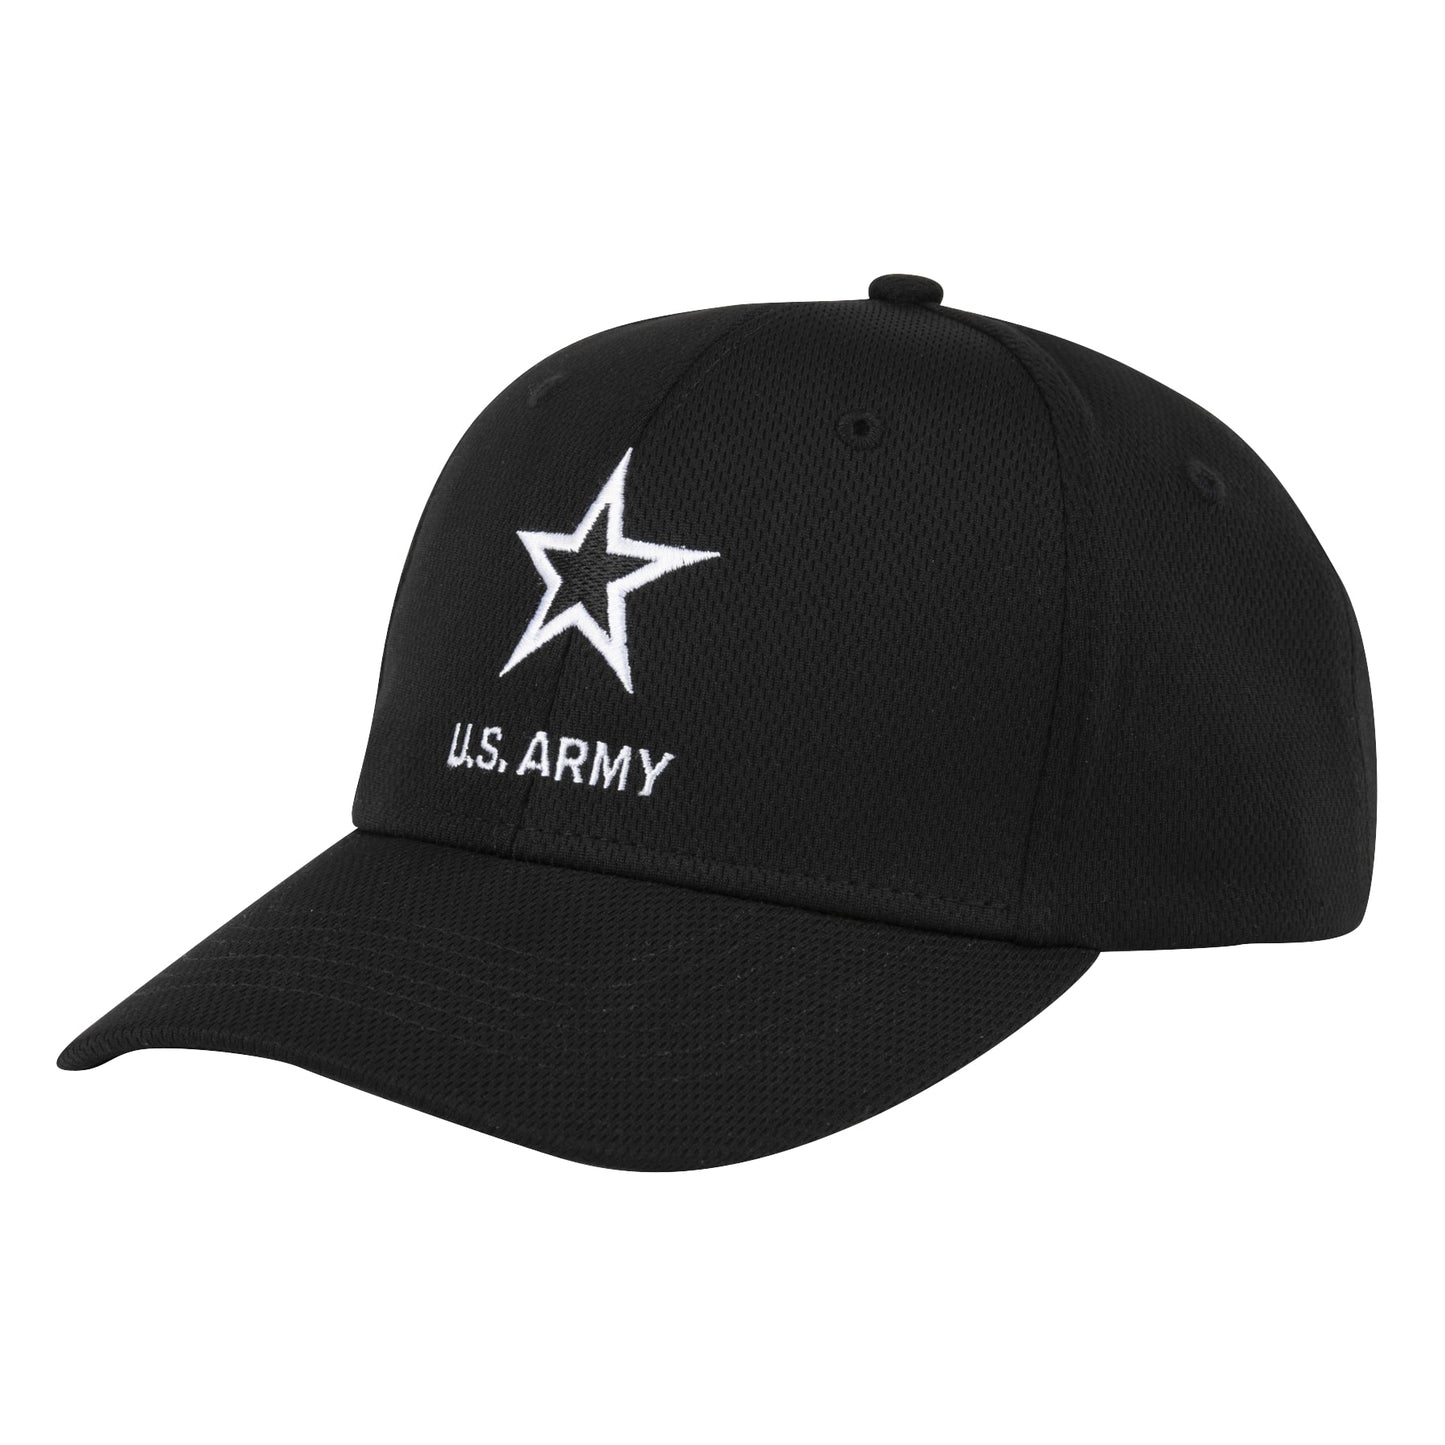 Basic U.S. Army Logo Black Cap